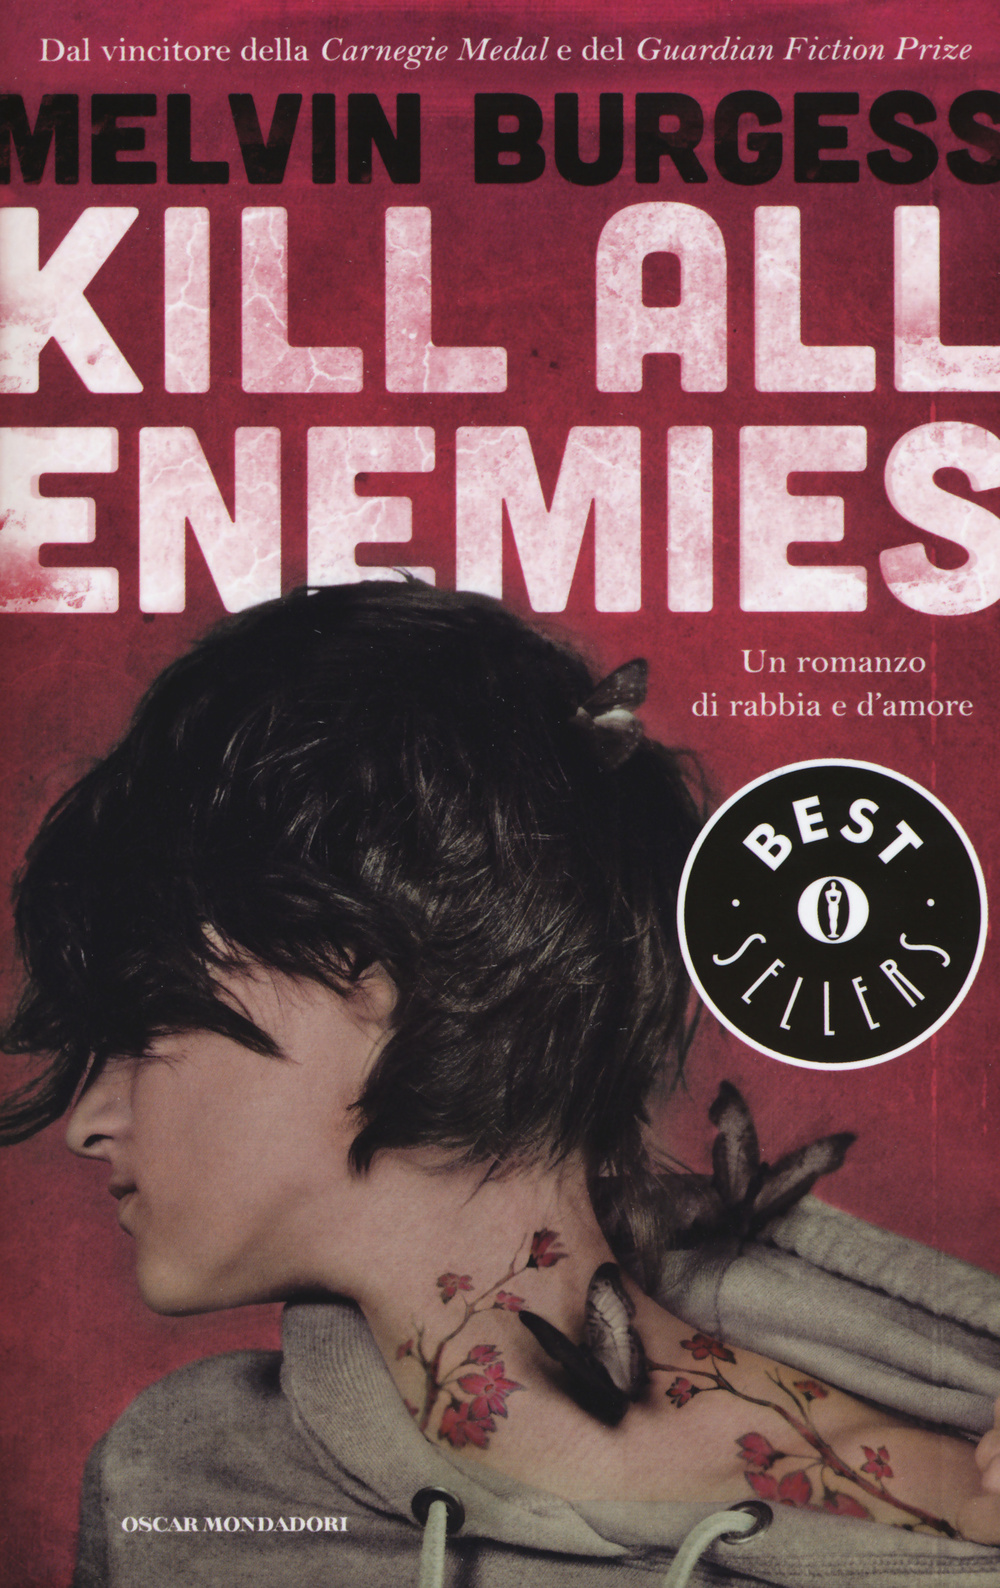 Kill all enemies